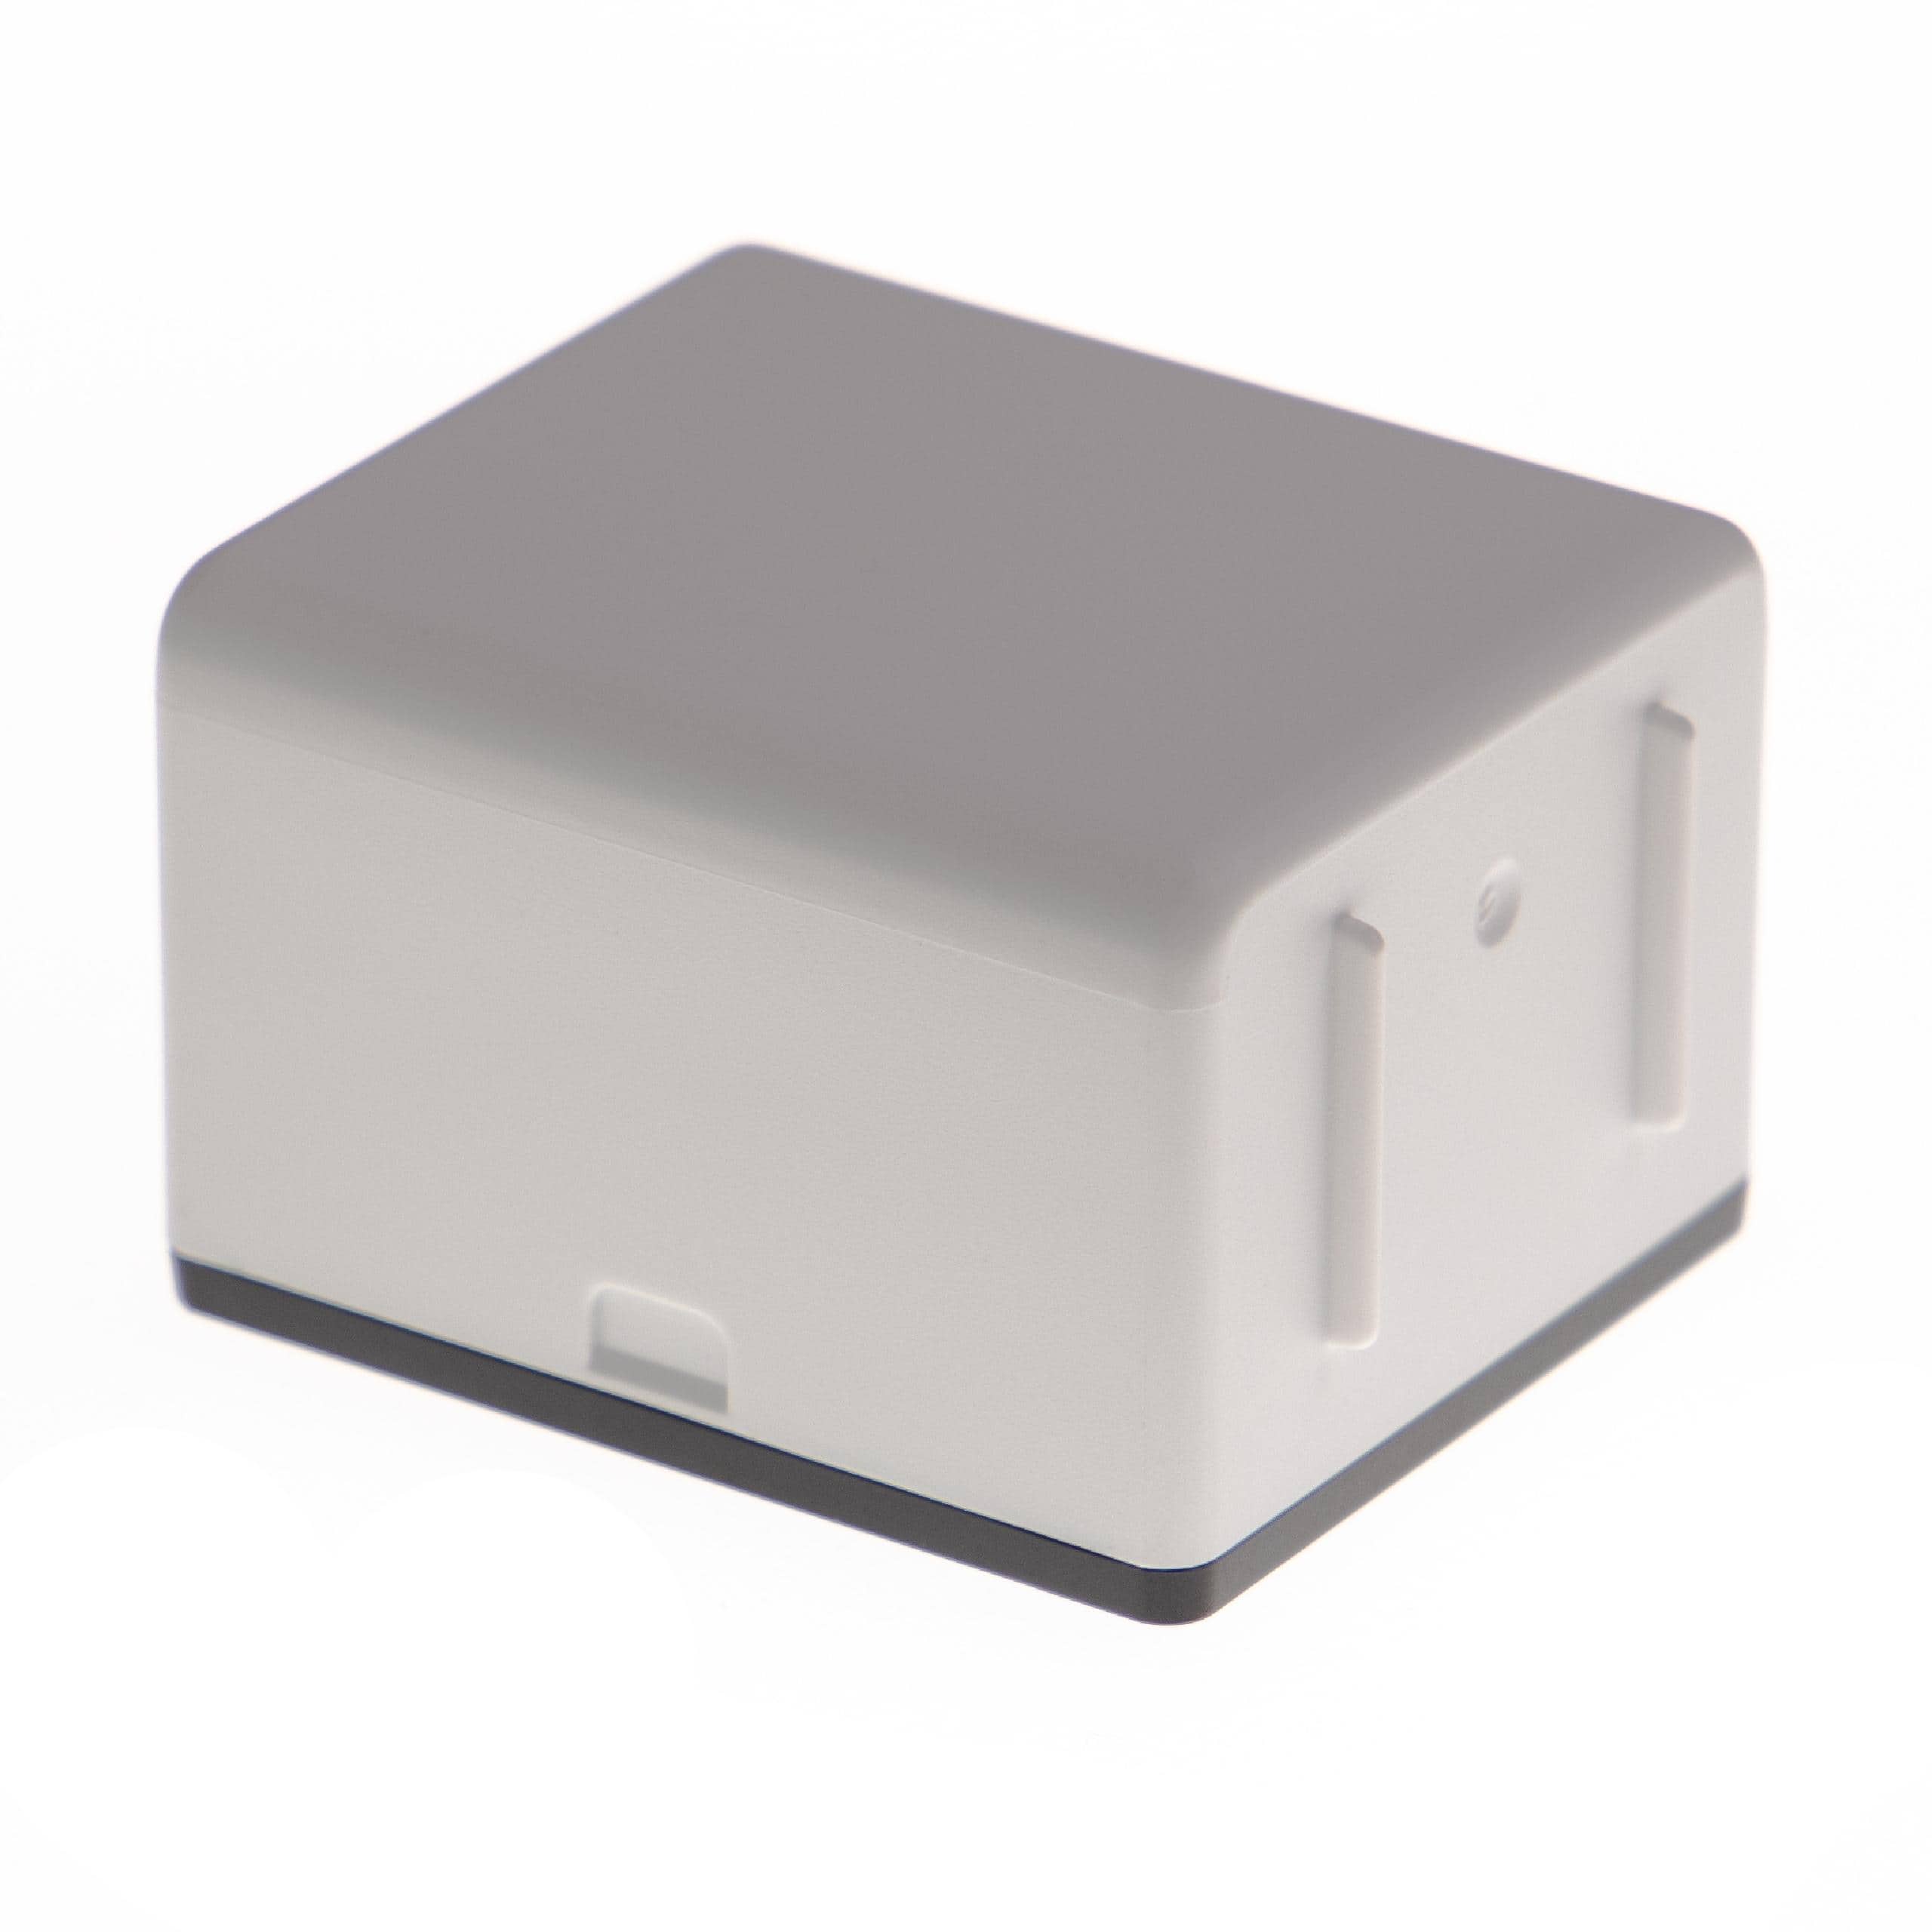 Batterie remplace Arlo 308-1070-01, 308-10069-01 pour caméra de surveillance - 5200mAh 3,85V Li-polymère